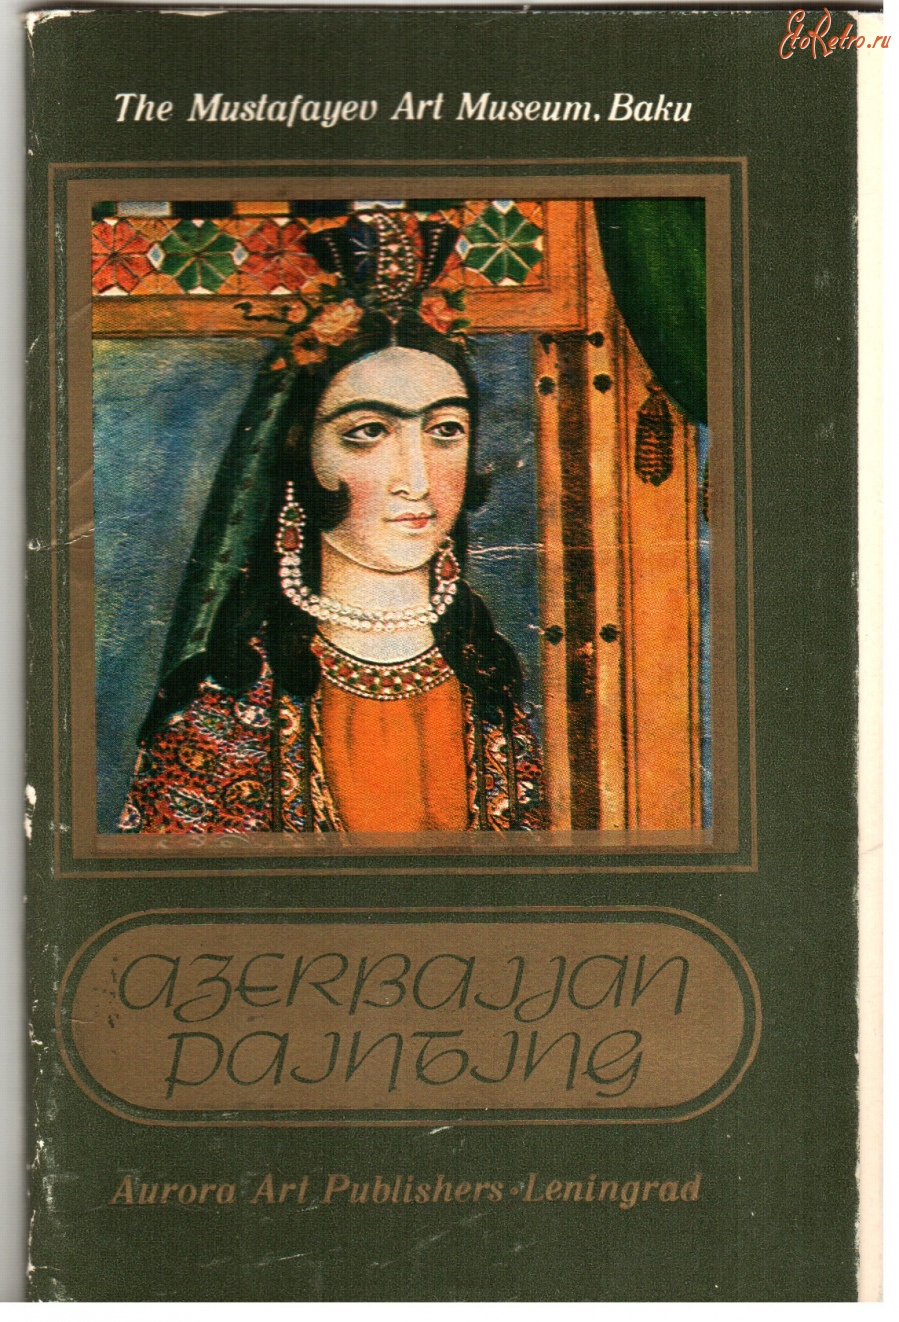 Ретро открытки - Азербайджанский госмузей искусств